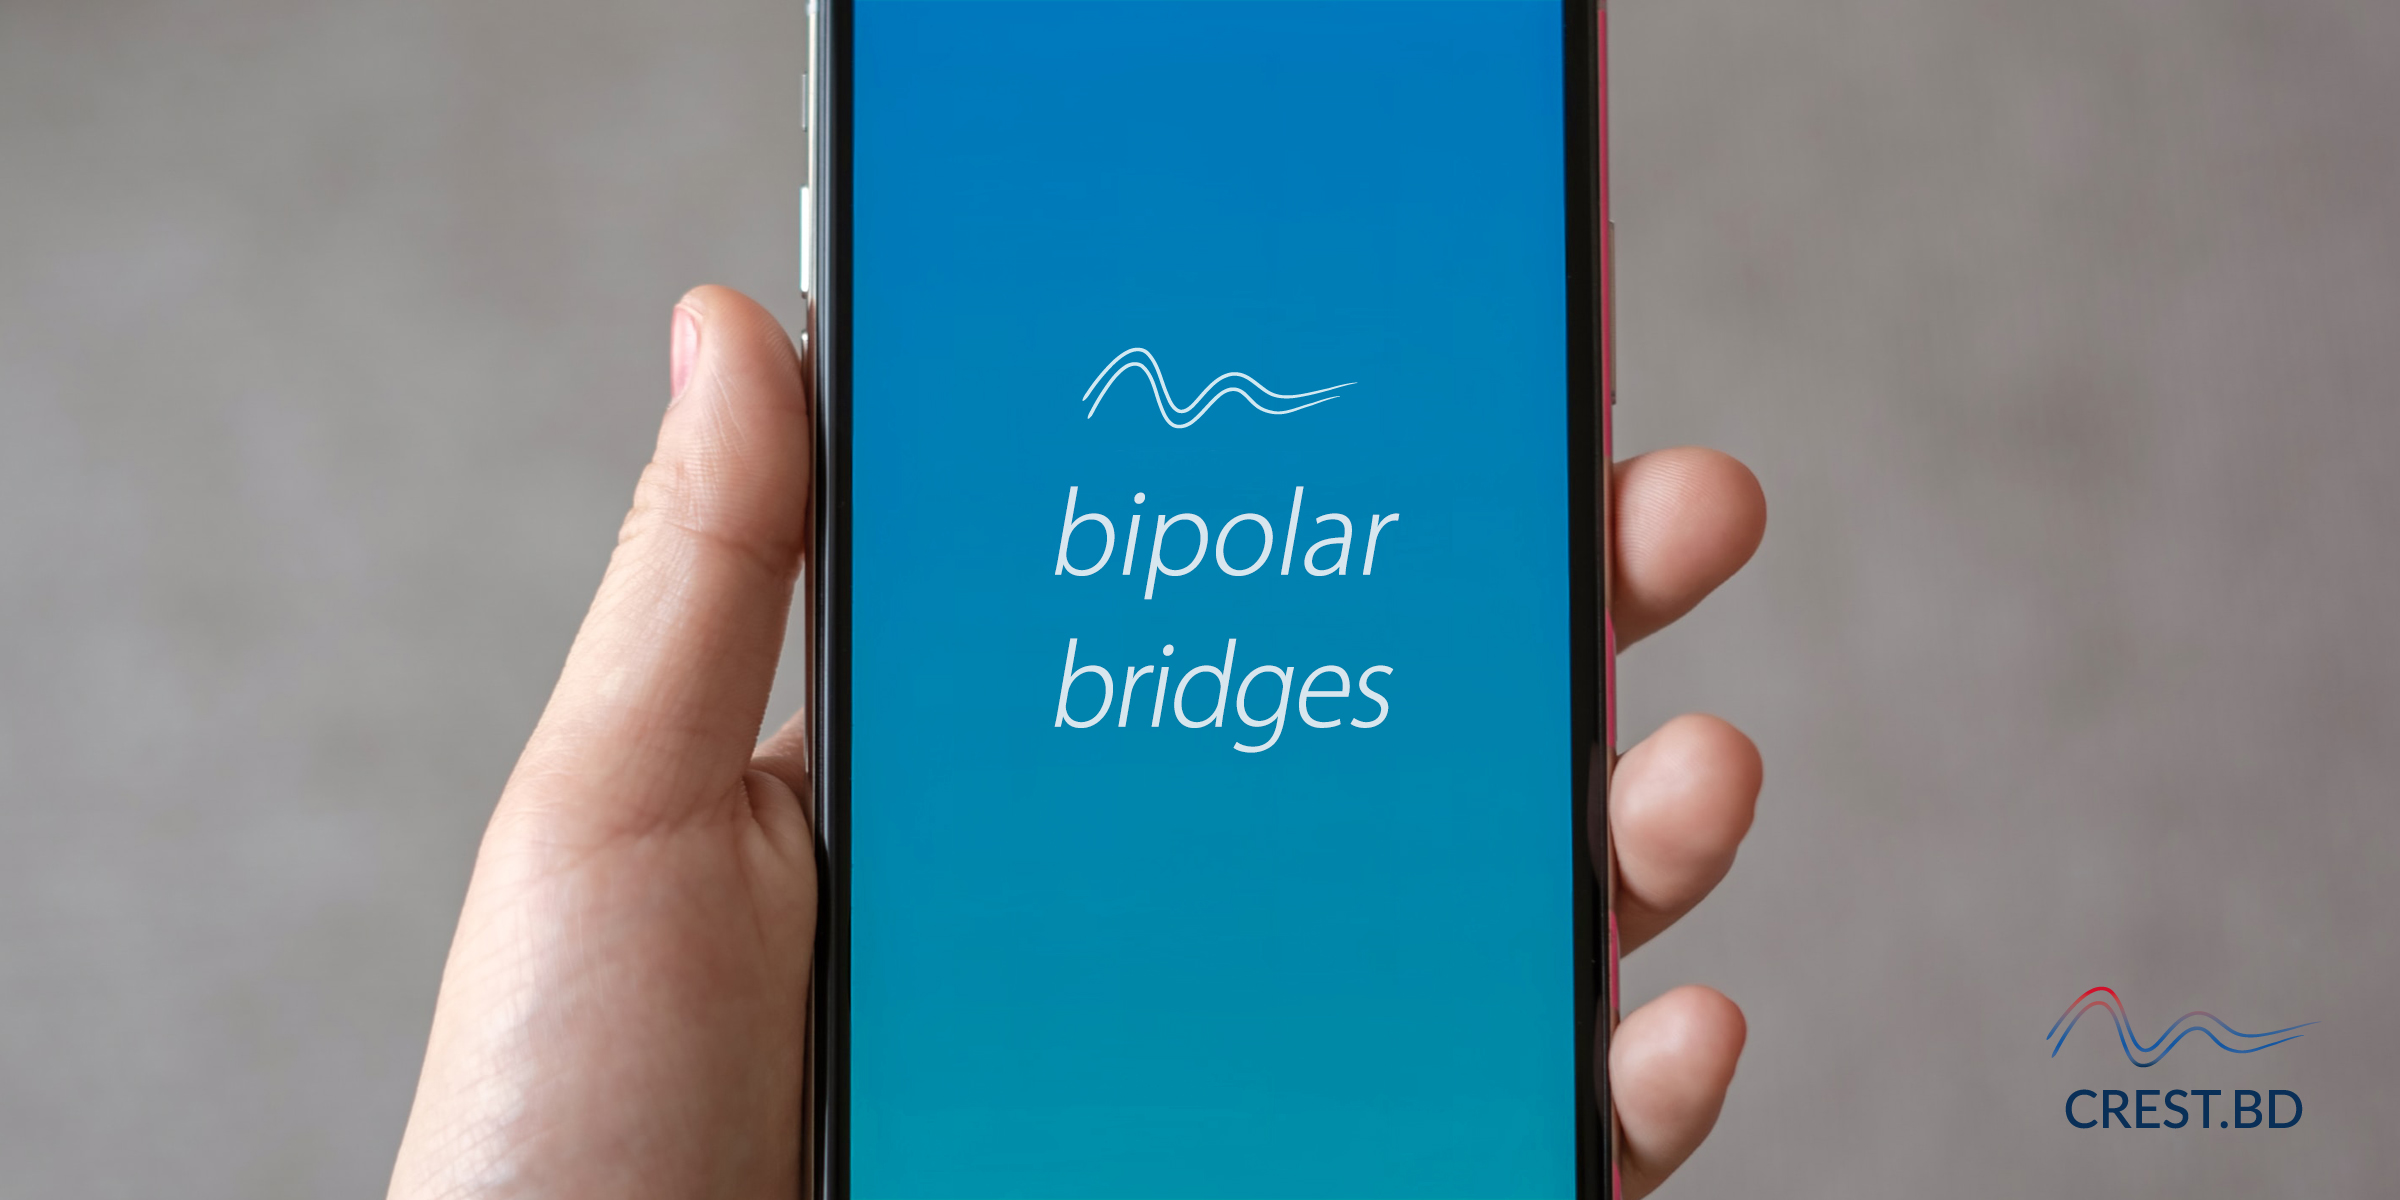 CREST.BD receives CIHR funding to develop ‘Bipolar Bridges’ app